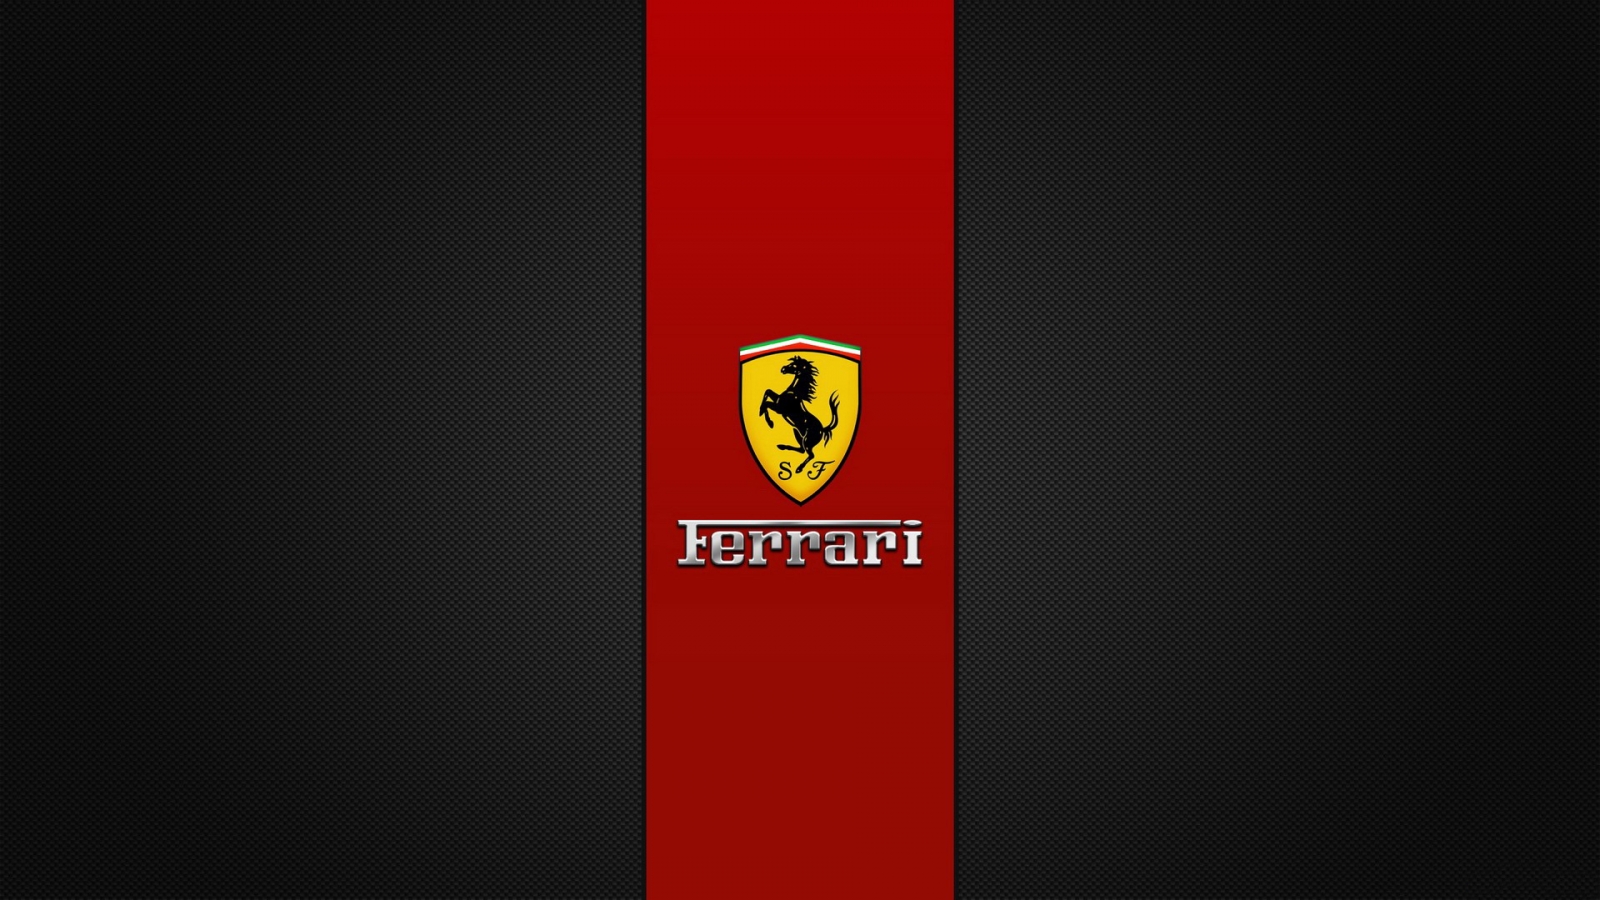 Ferrari Brand Logo for 1600 x 900 HDTV resolution